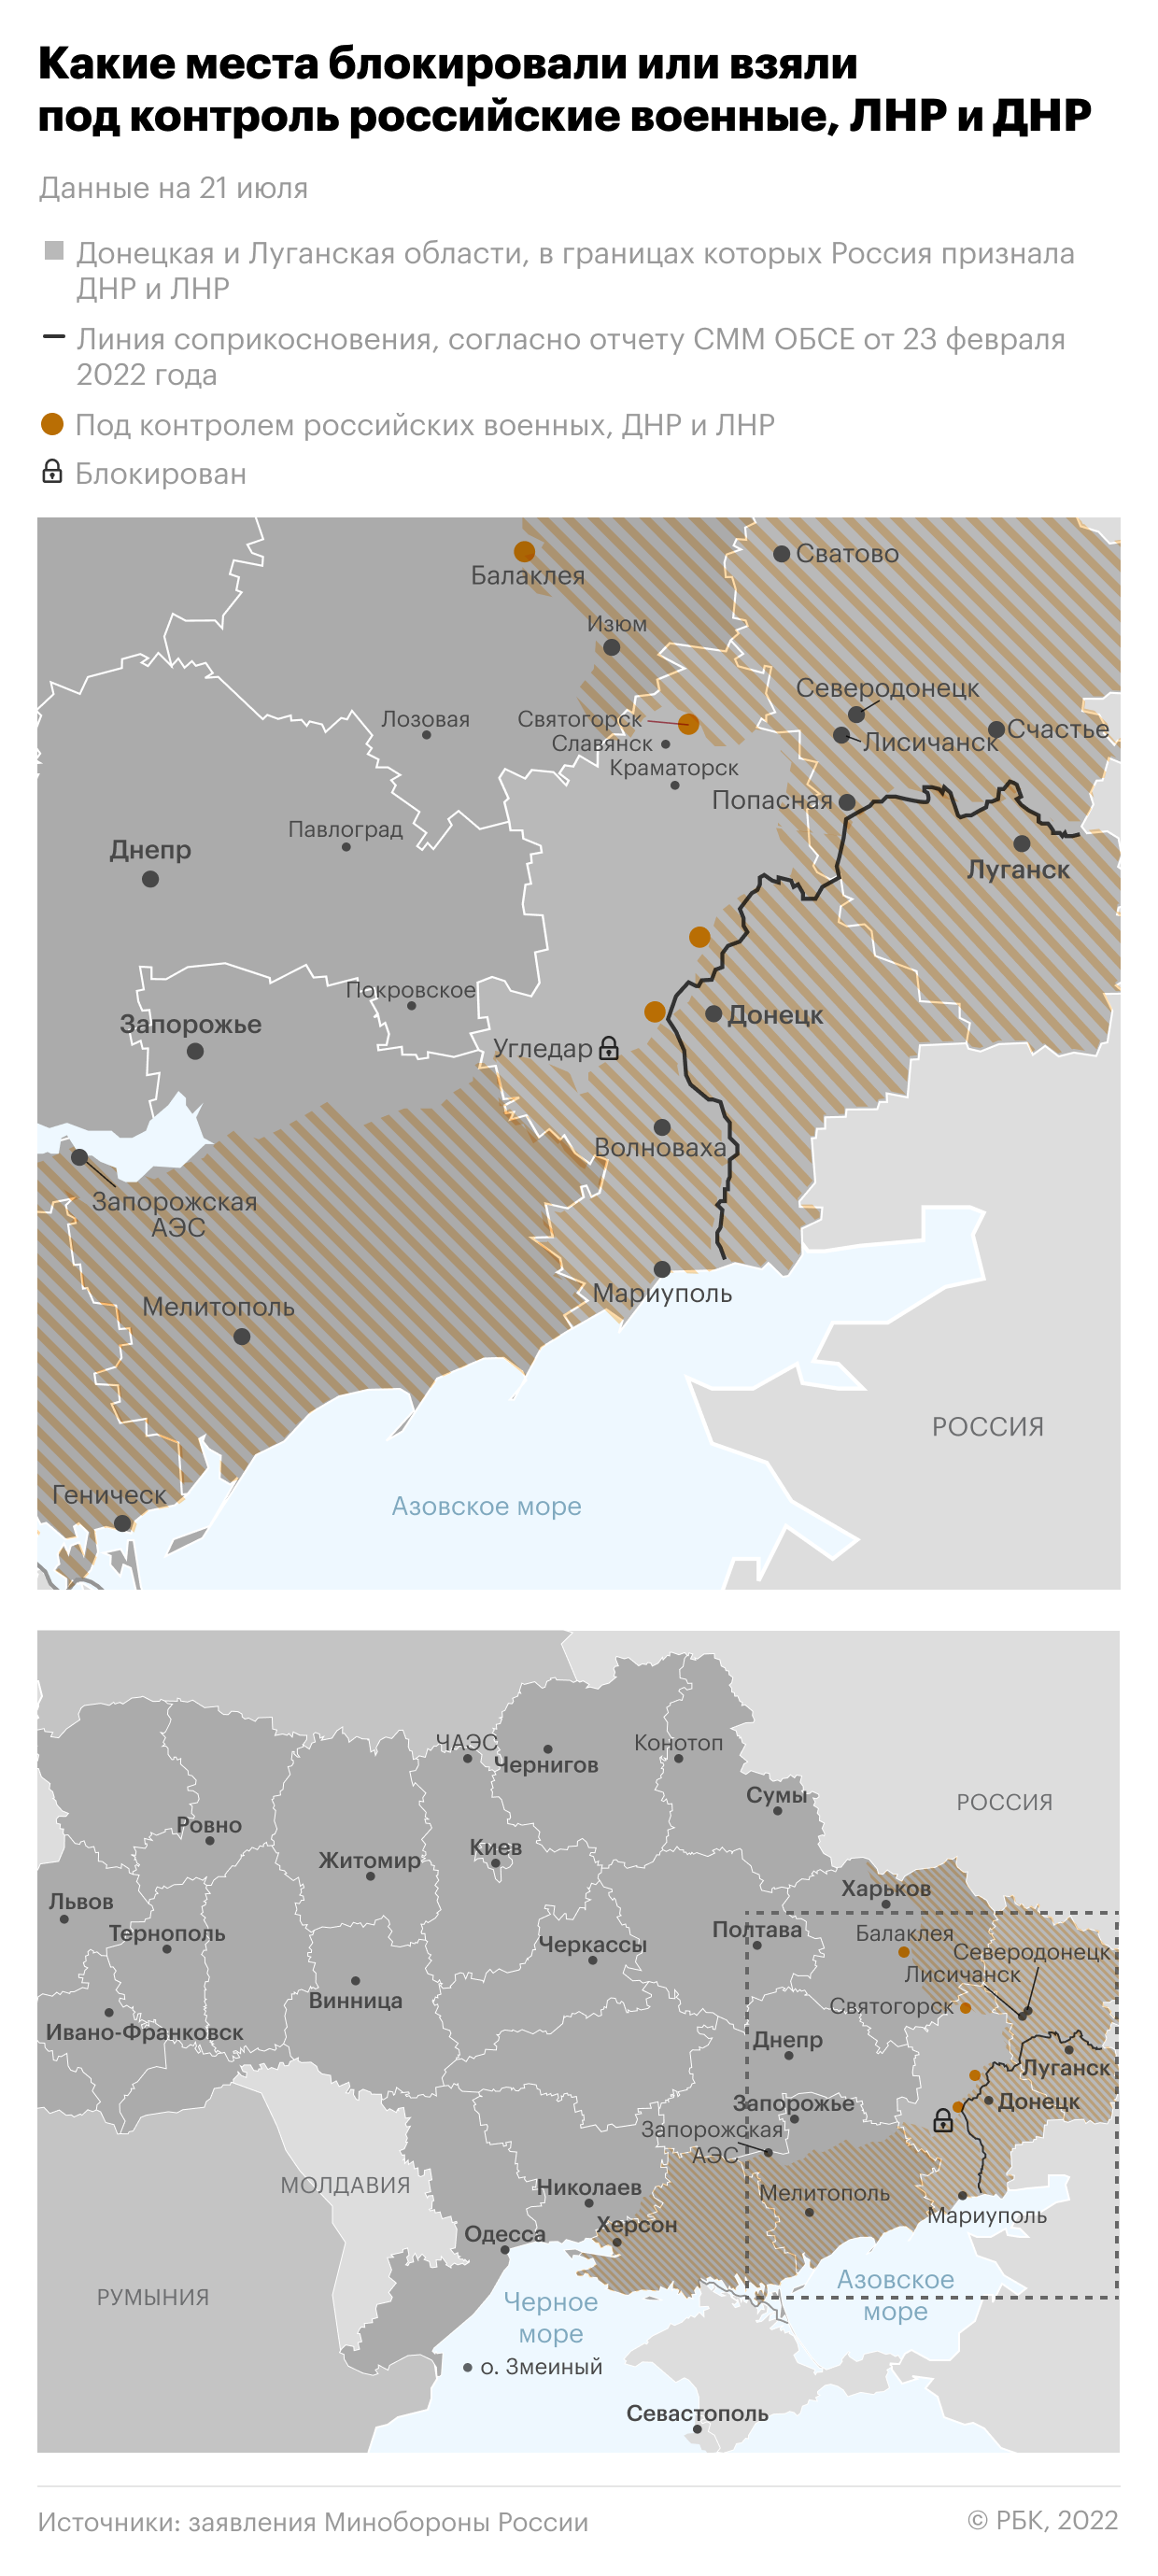 Медведев пообещал «пошире» отодвинуть ВСУ в Донбассе"/>













